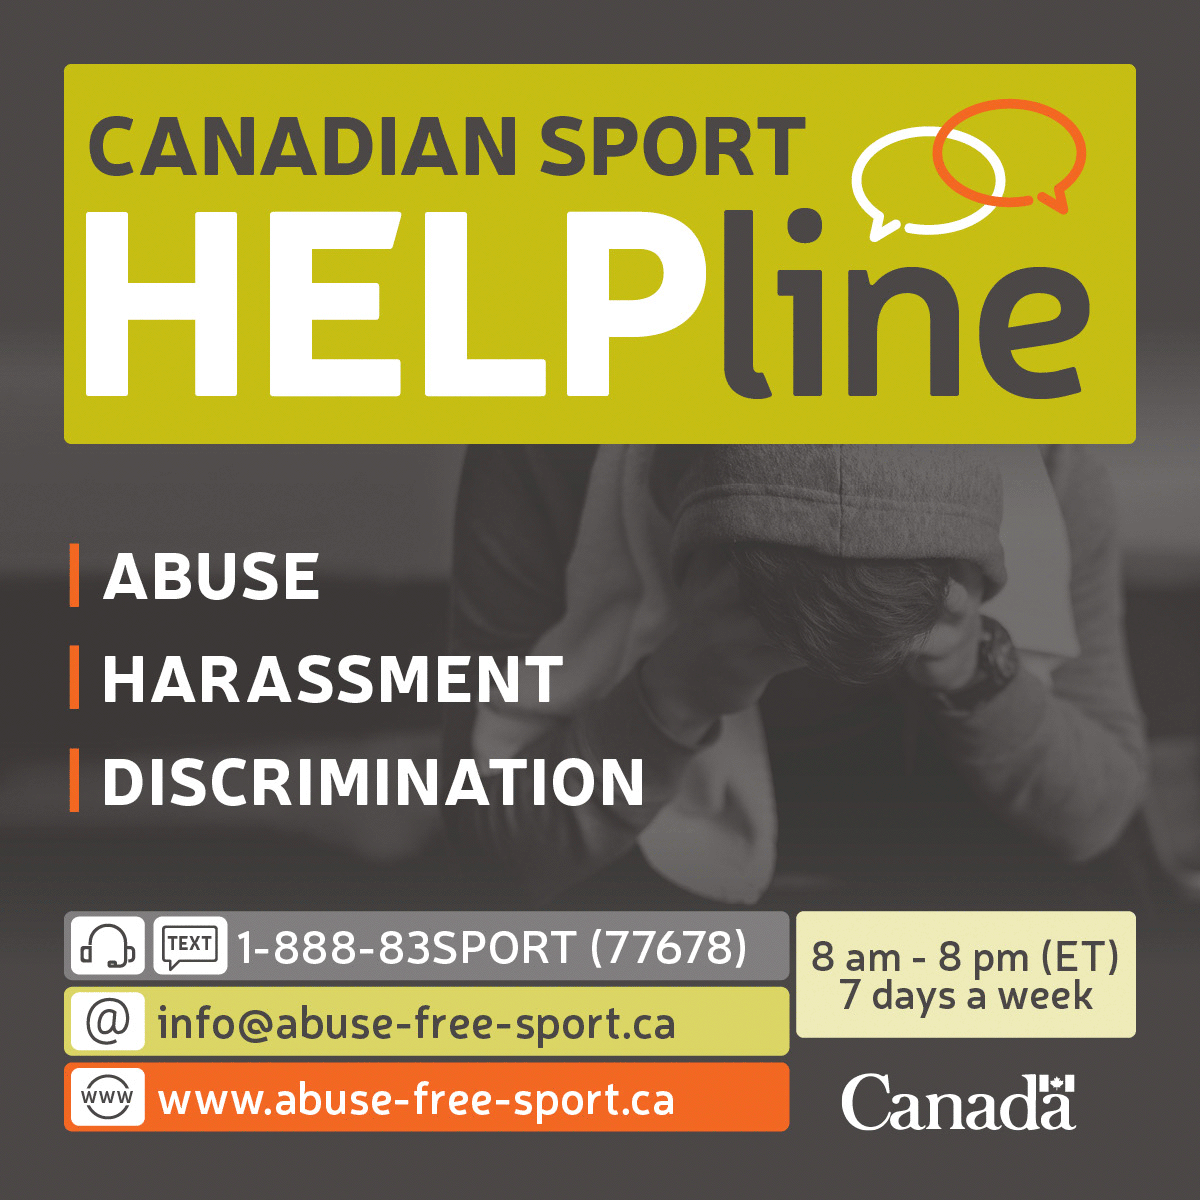 Canadian Sport Helpline 1-888-837-7678